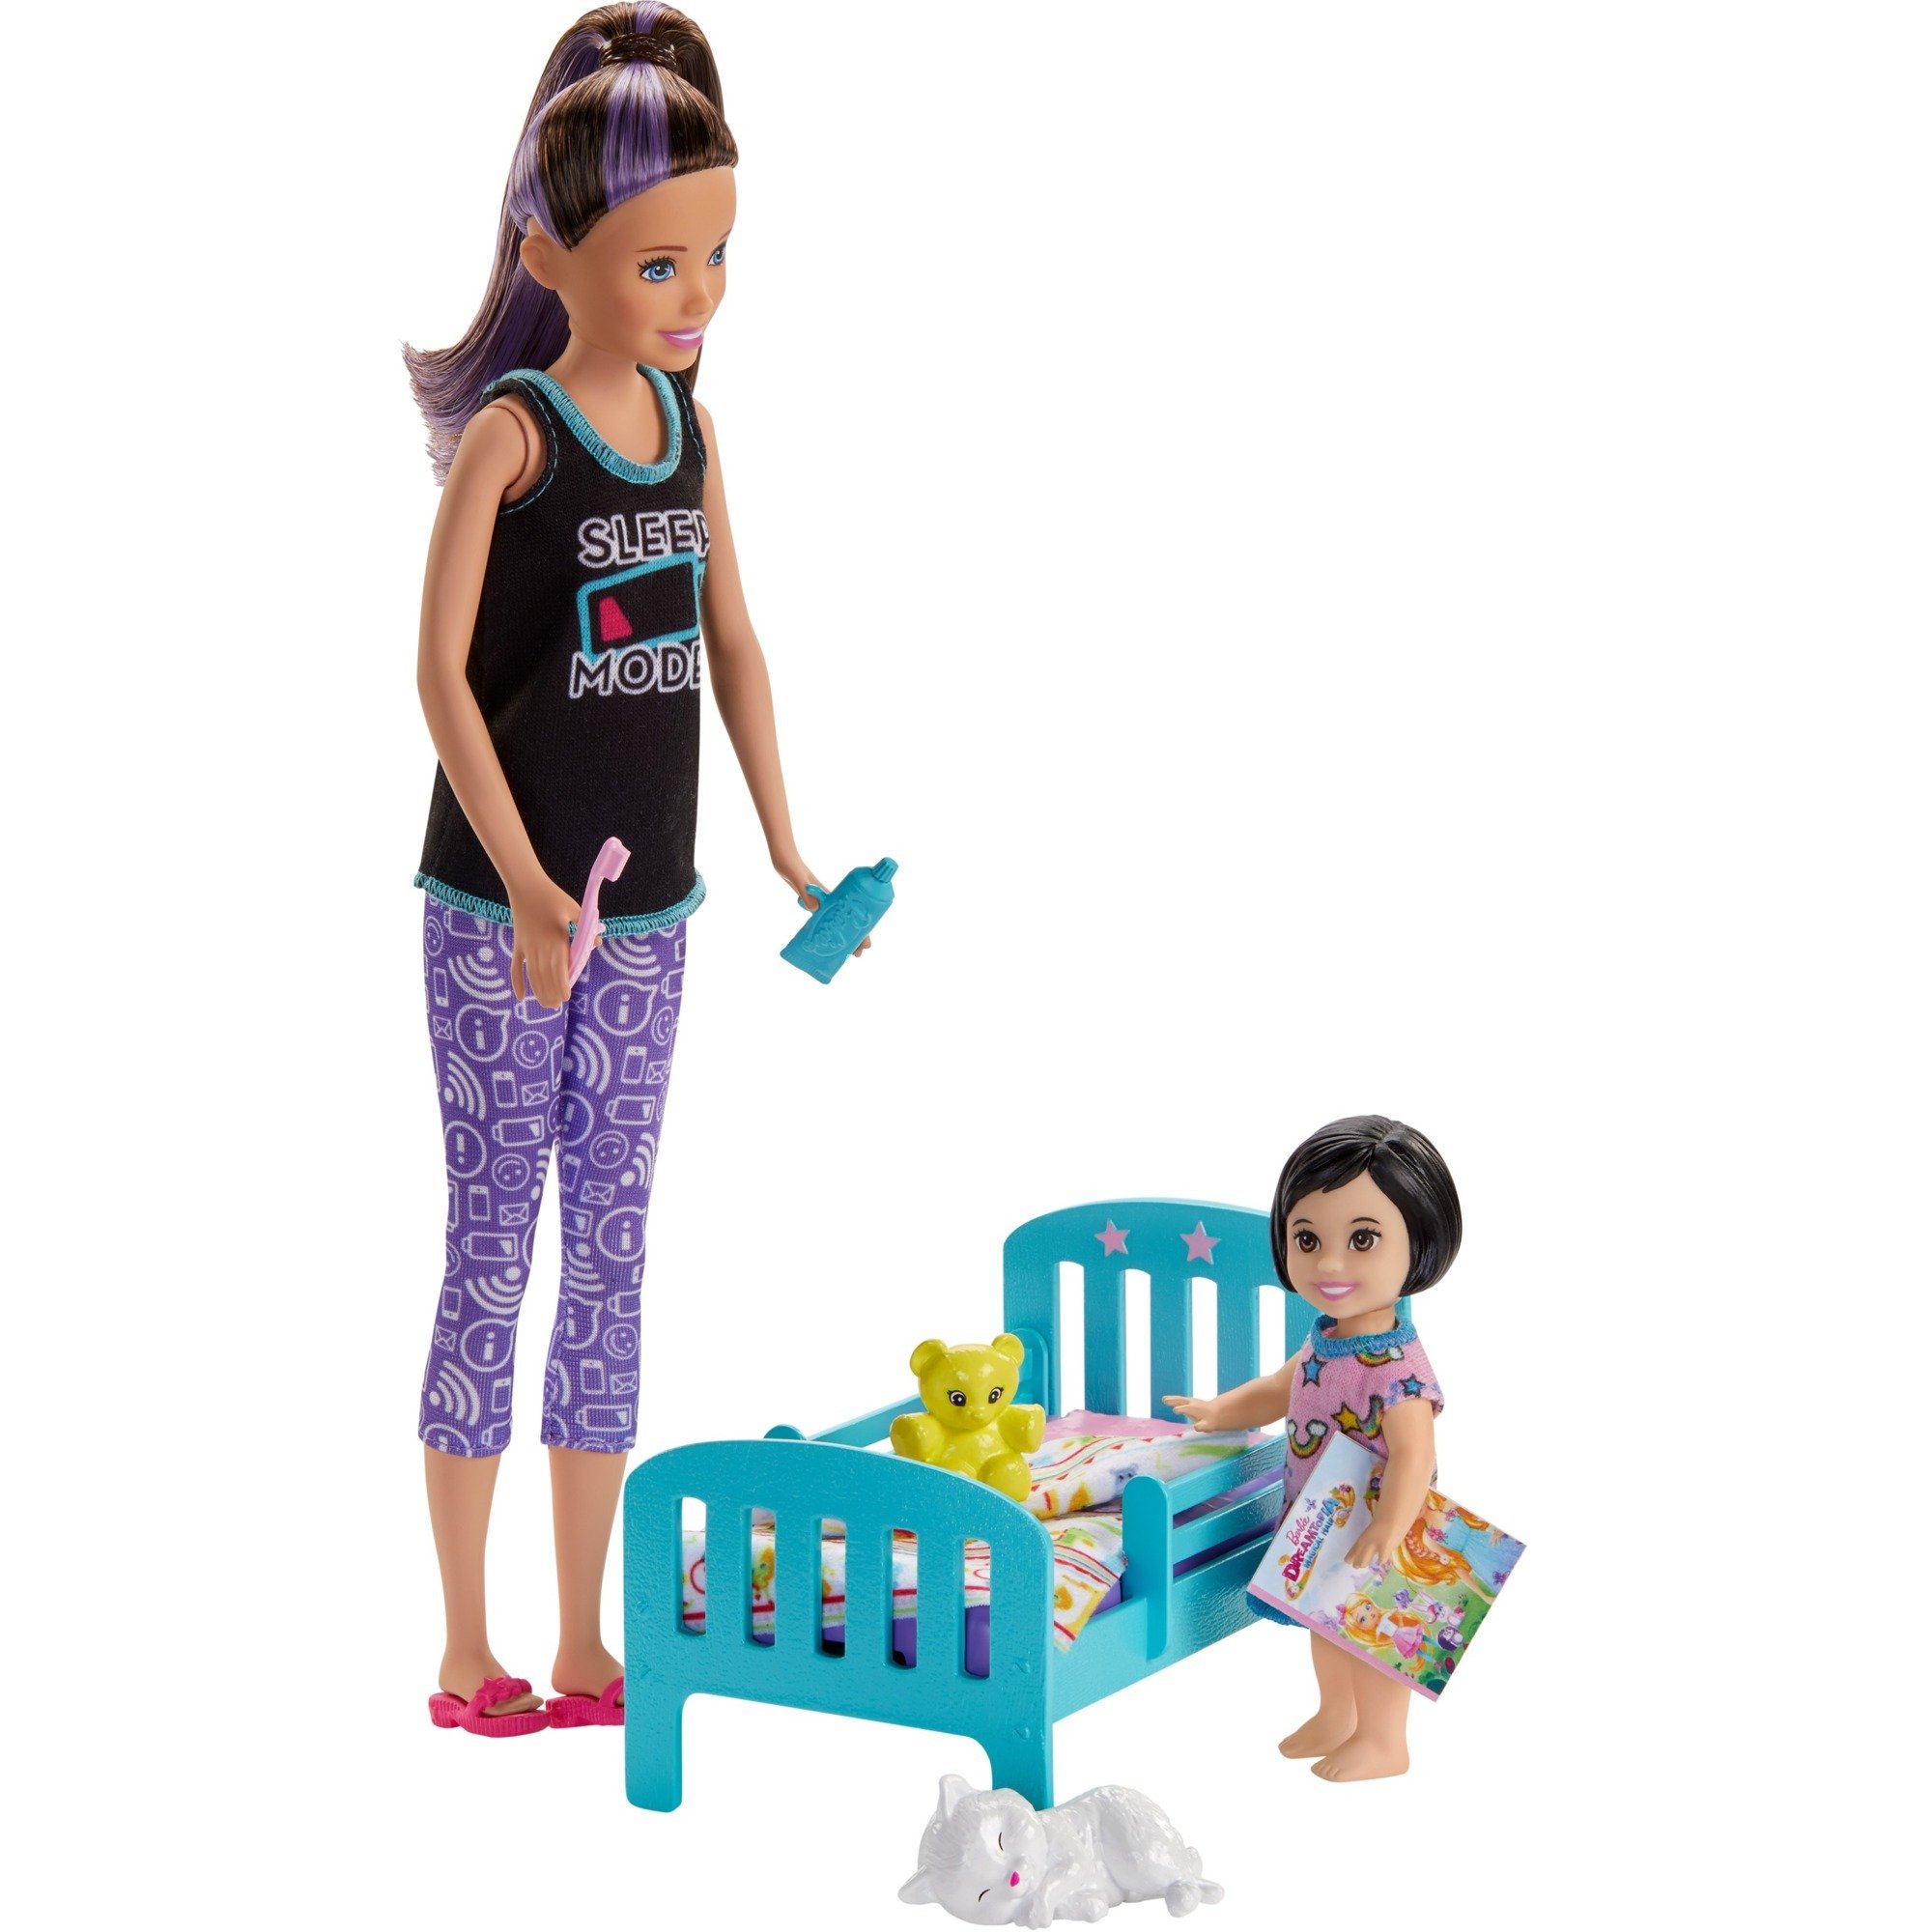 baby sitter barbie